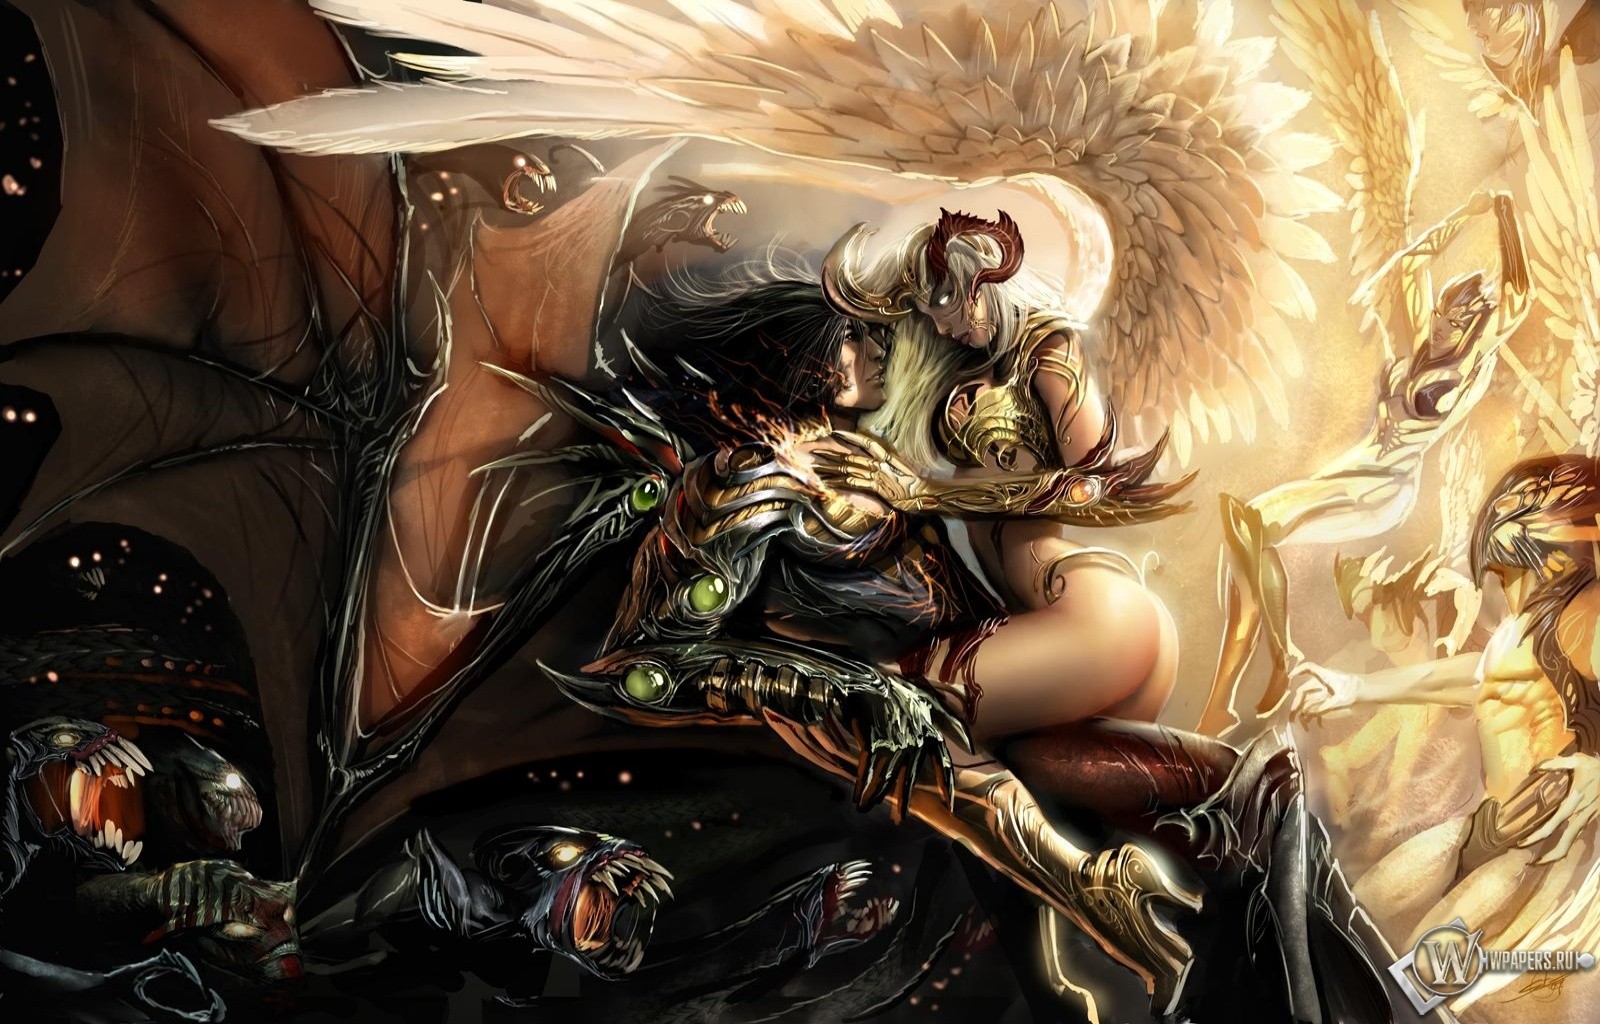 General 1600x1024 demon fantasy girl ass fantasy art dark fantasy the Darkness fantasy men